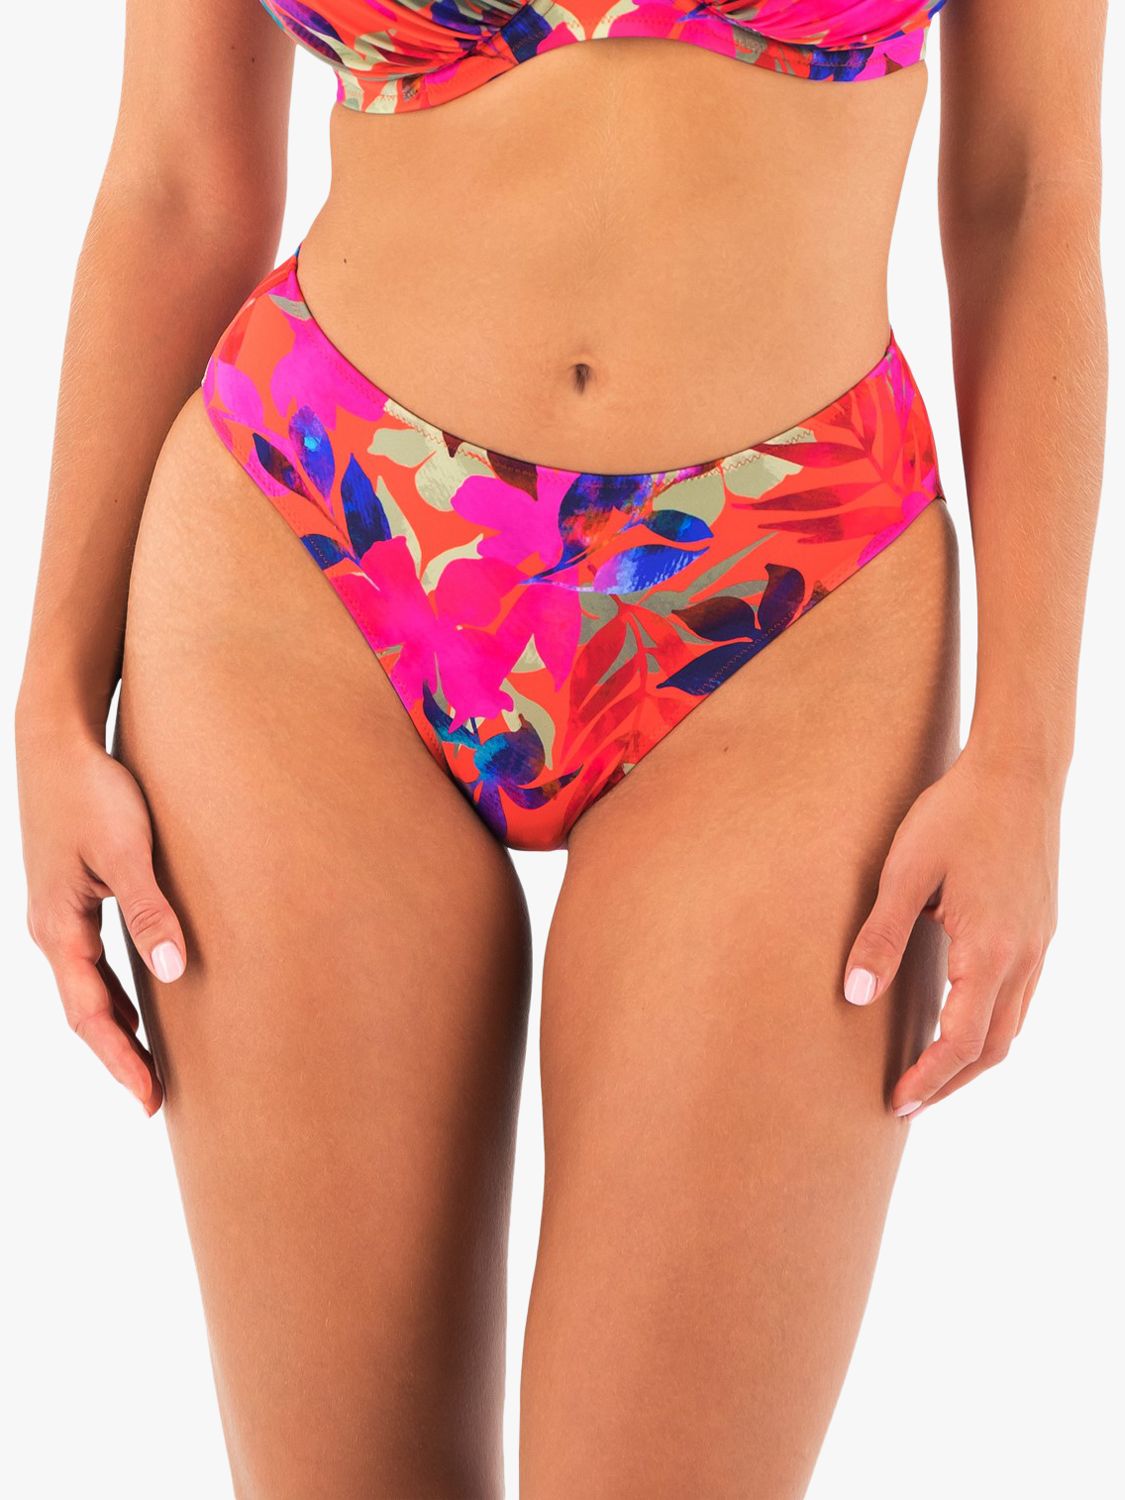 Fantasie Playa de Carmen Beach Party Bikini Bottoms, Multi, XL